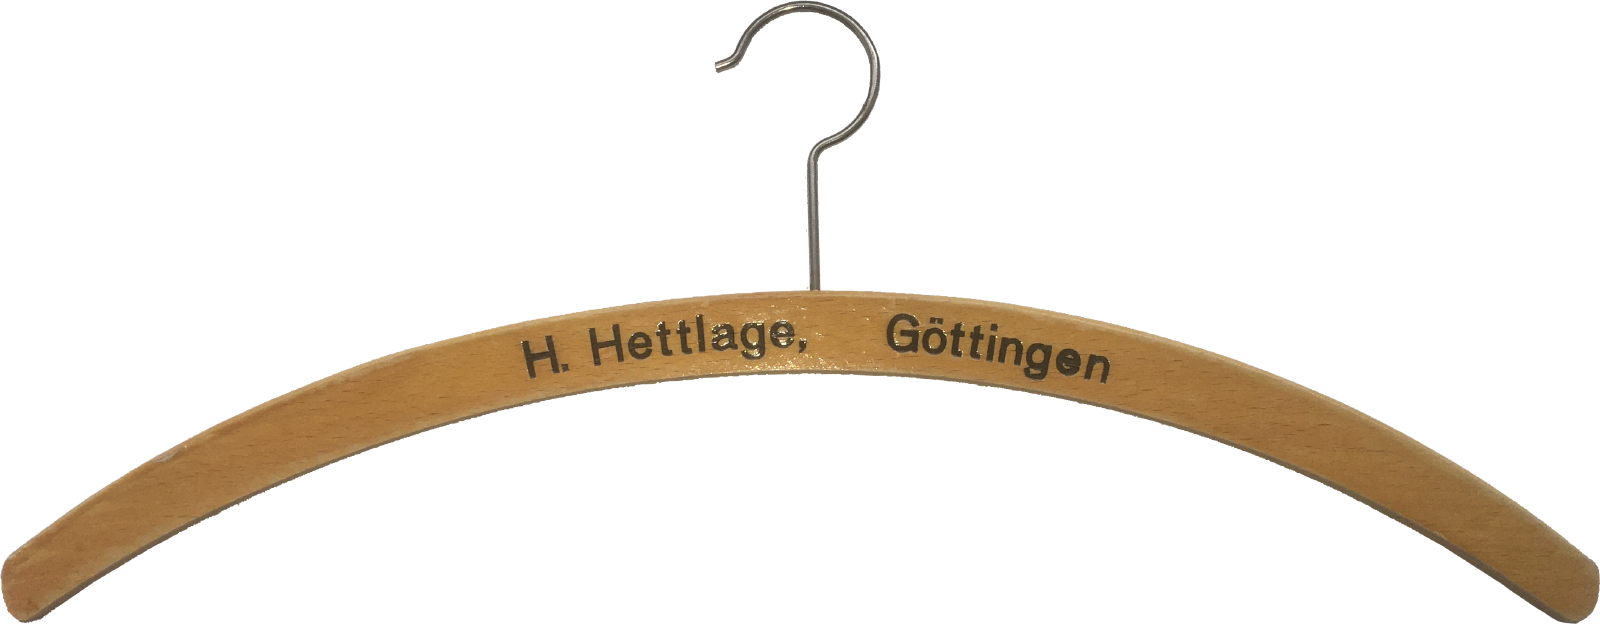 H. Hettlage, Göttingen